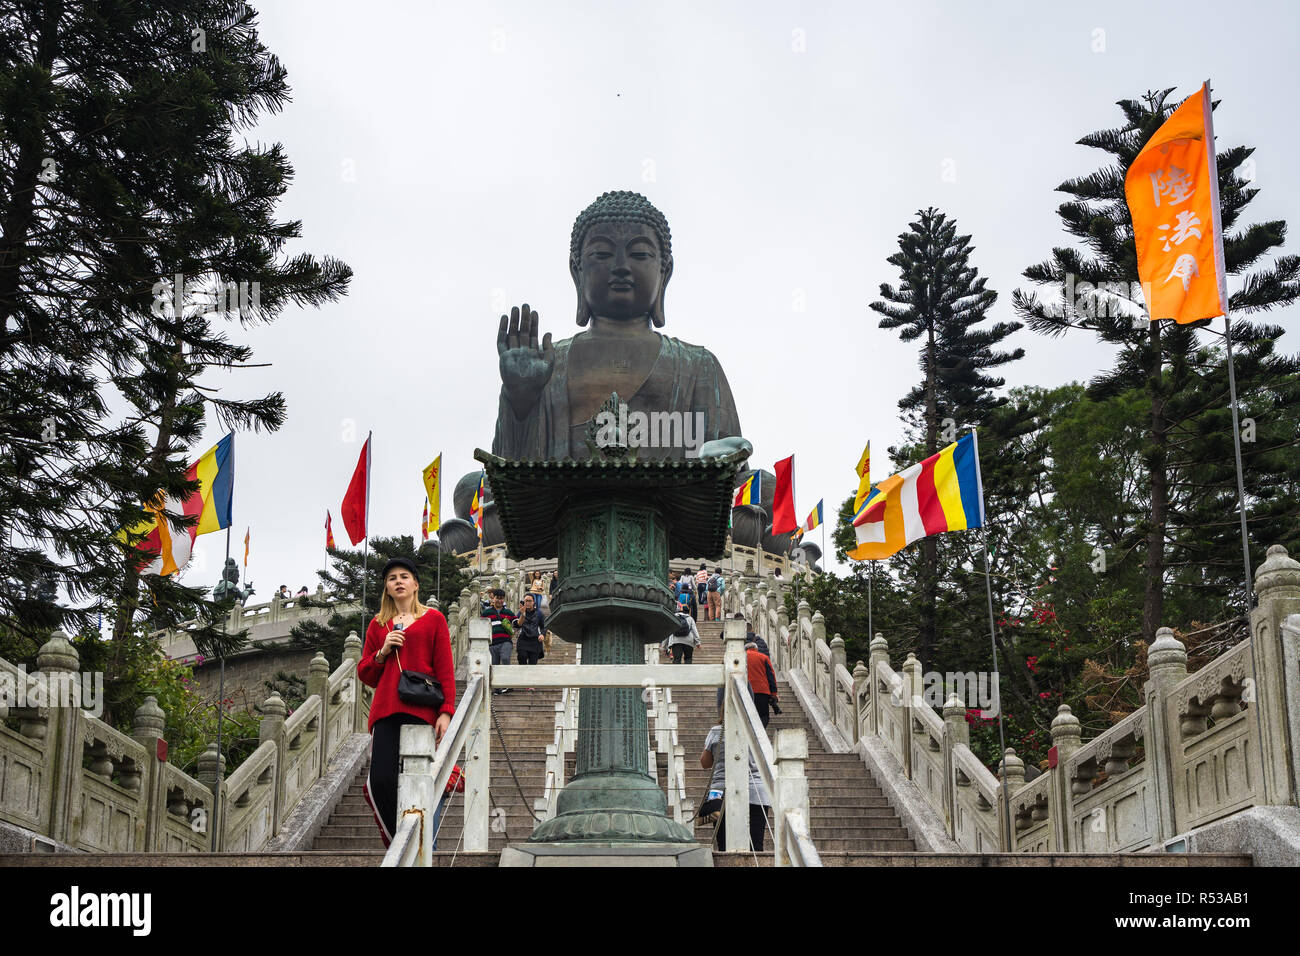 Les touristes à marcher sur le Tian Tan Buddha, (Grand Bouddha),a 34 mètres de la statue de Bouddha situé dans l'île de Lantau. Hong Kong, Janvier 2018 Banque D'Images